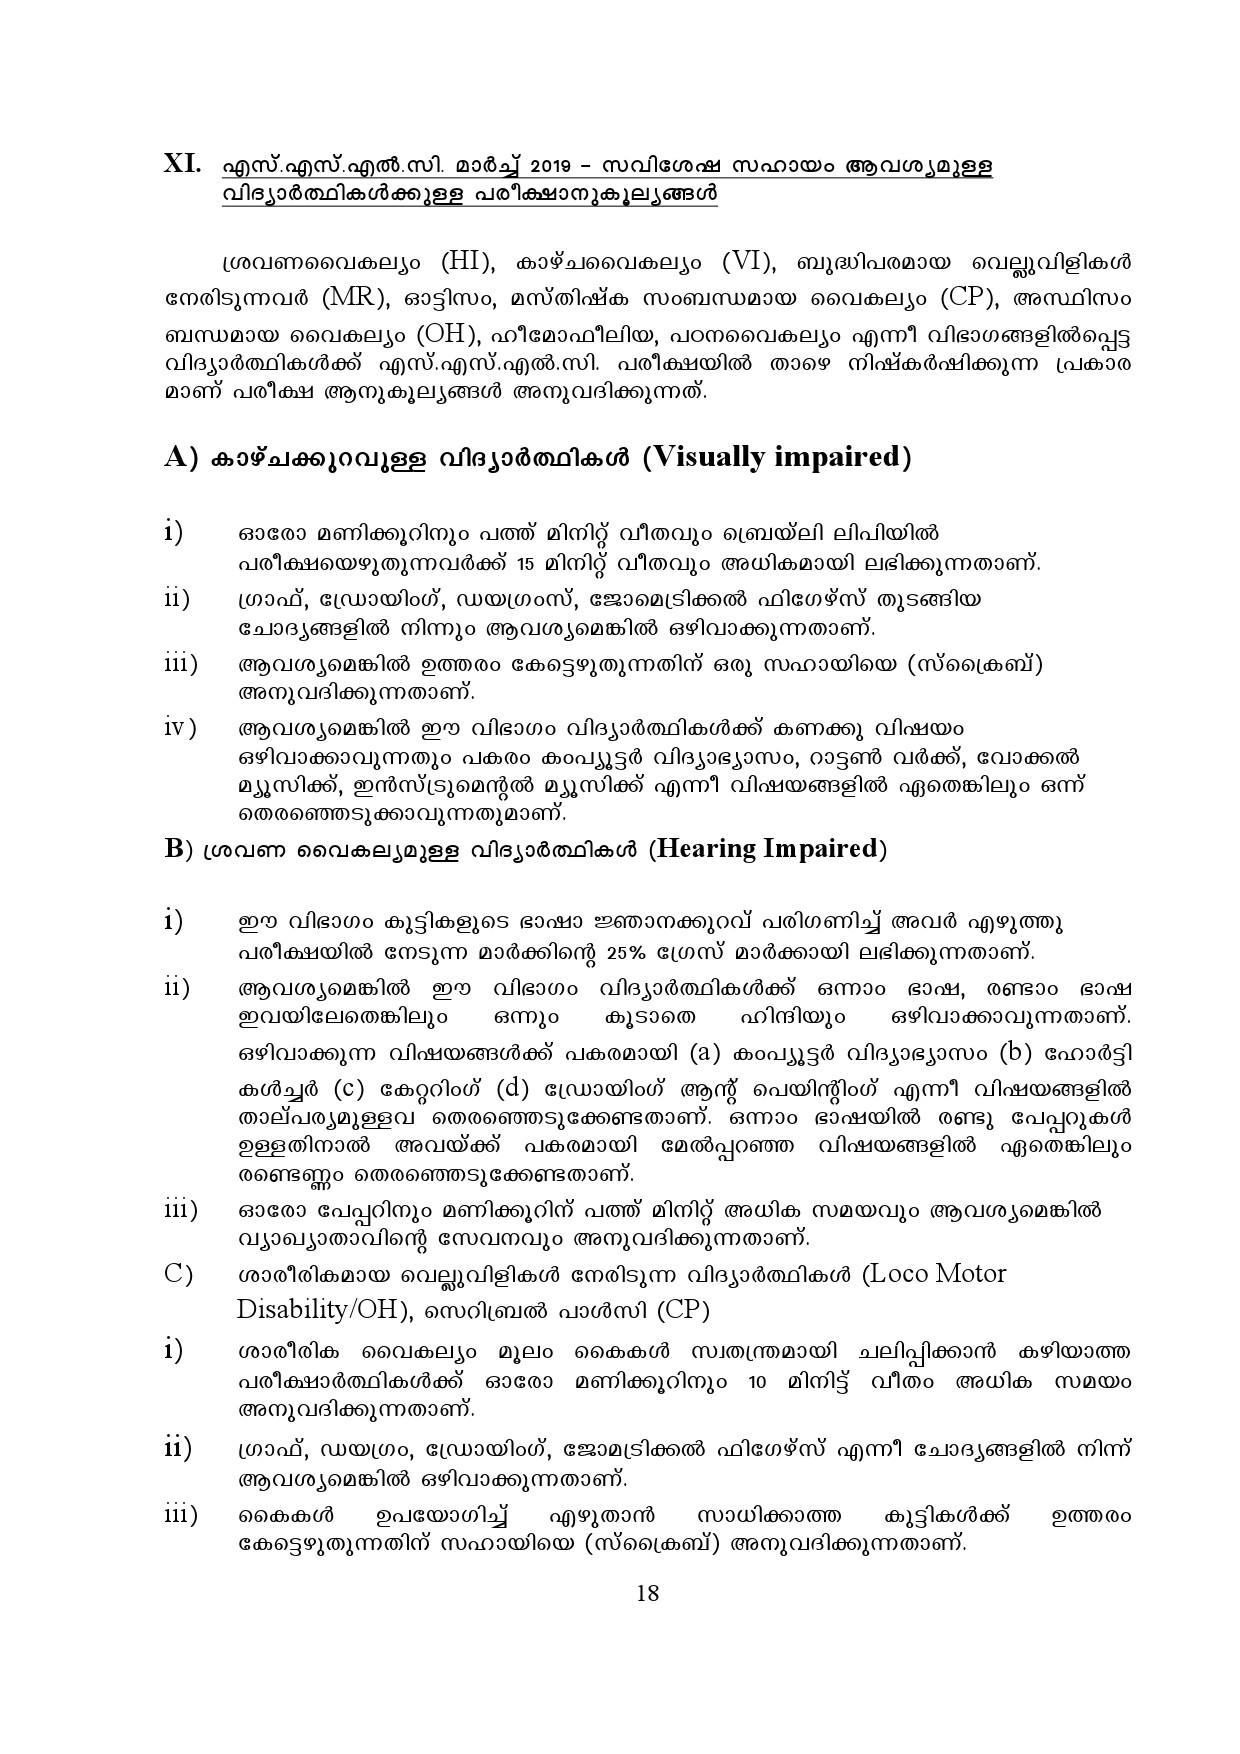 Kerala SSLC Exam Result 2019 - Notification Image 18